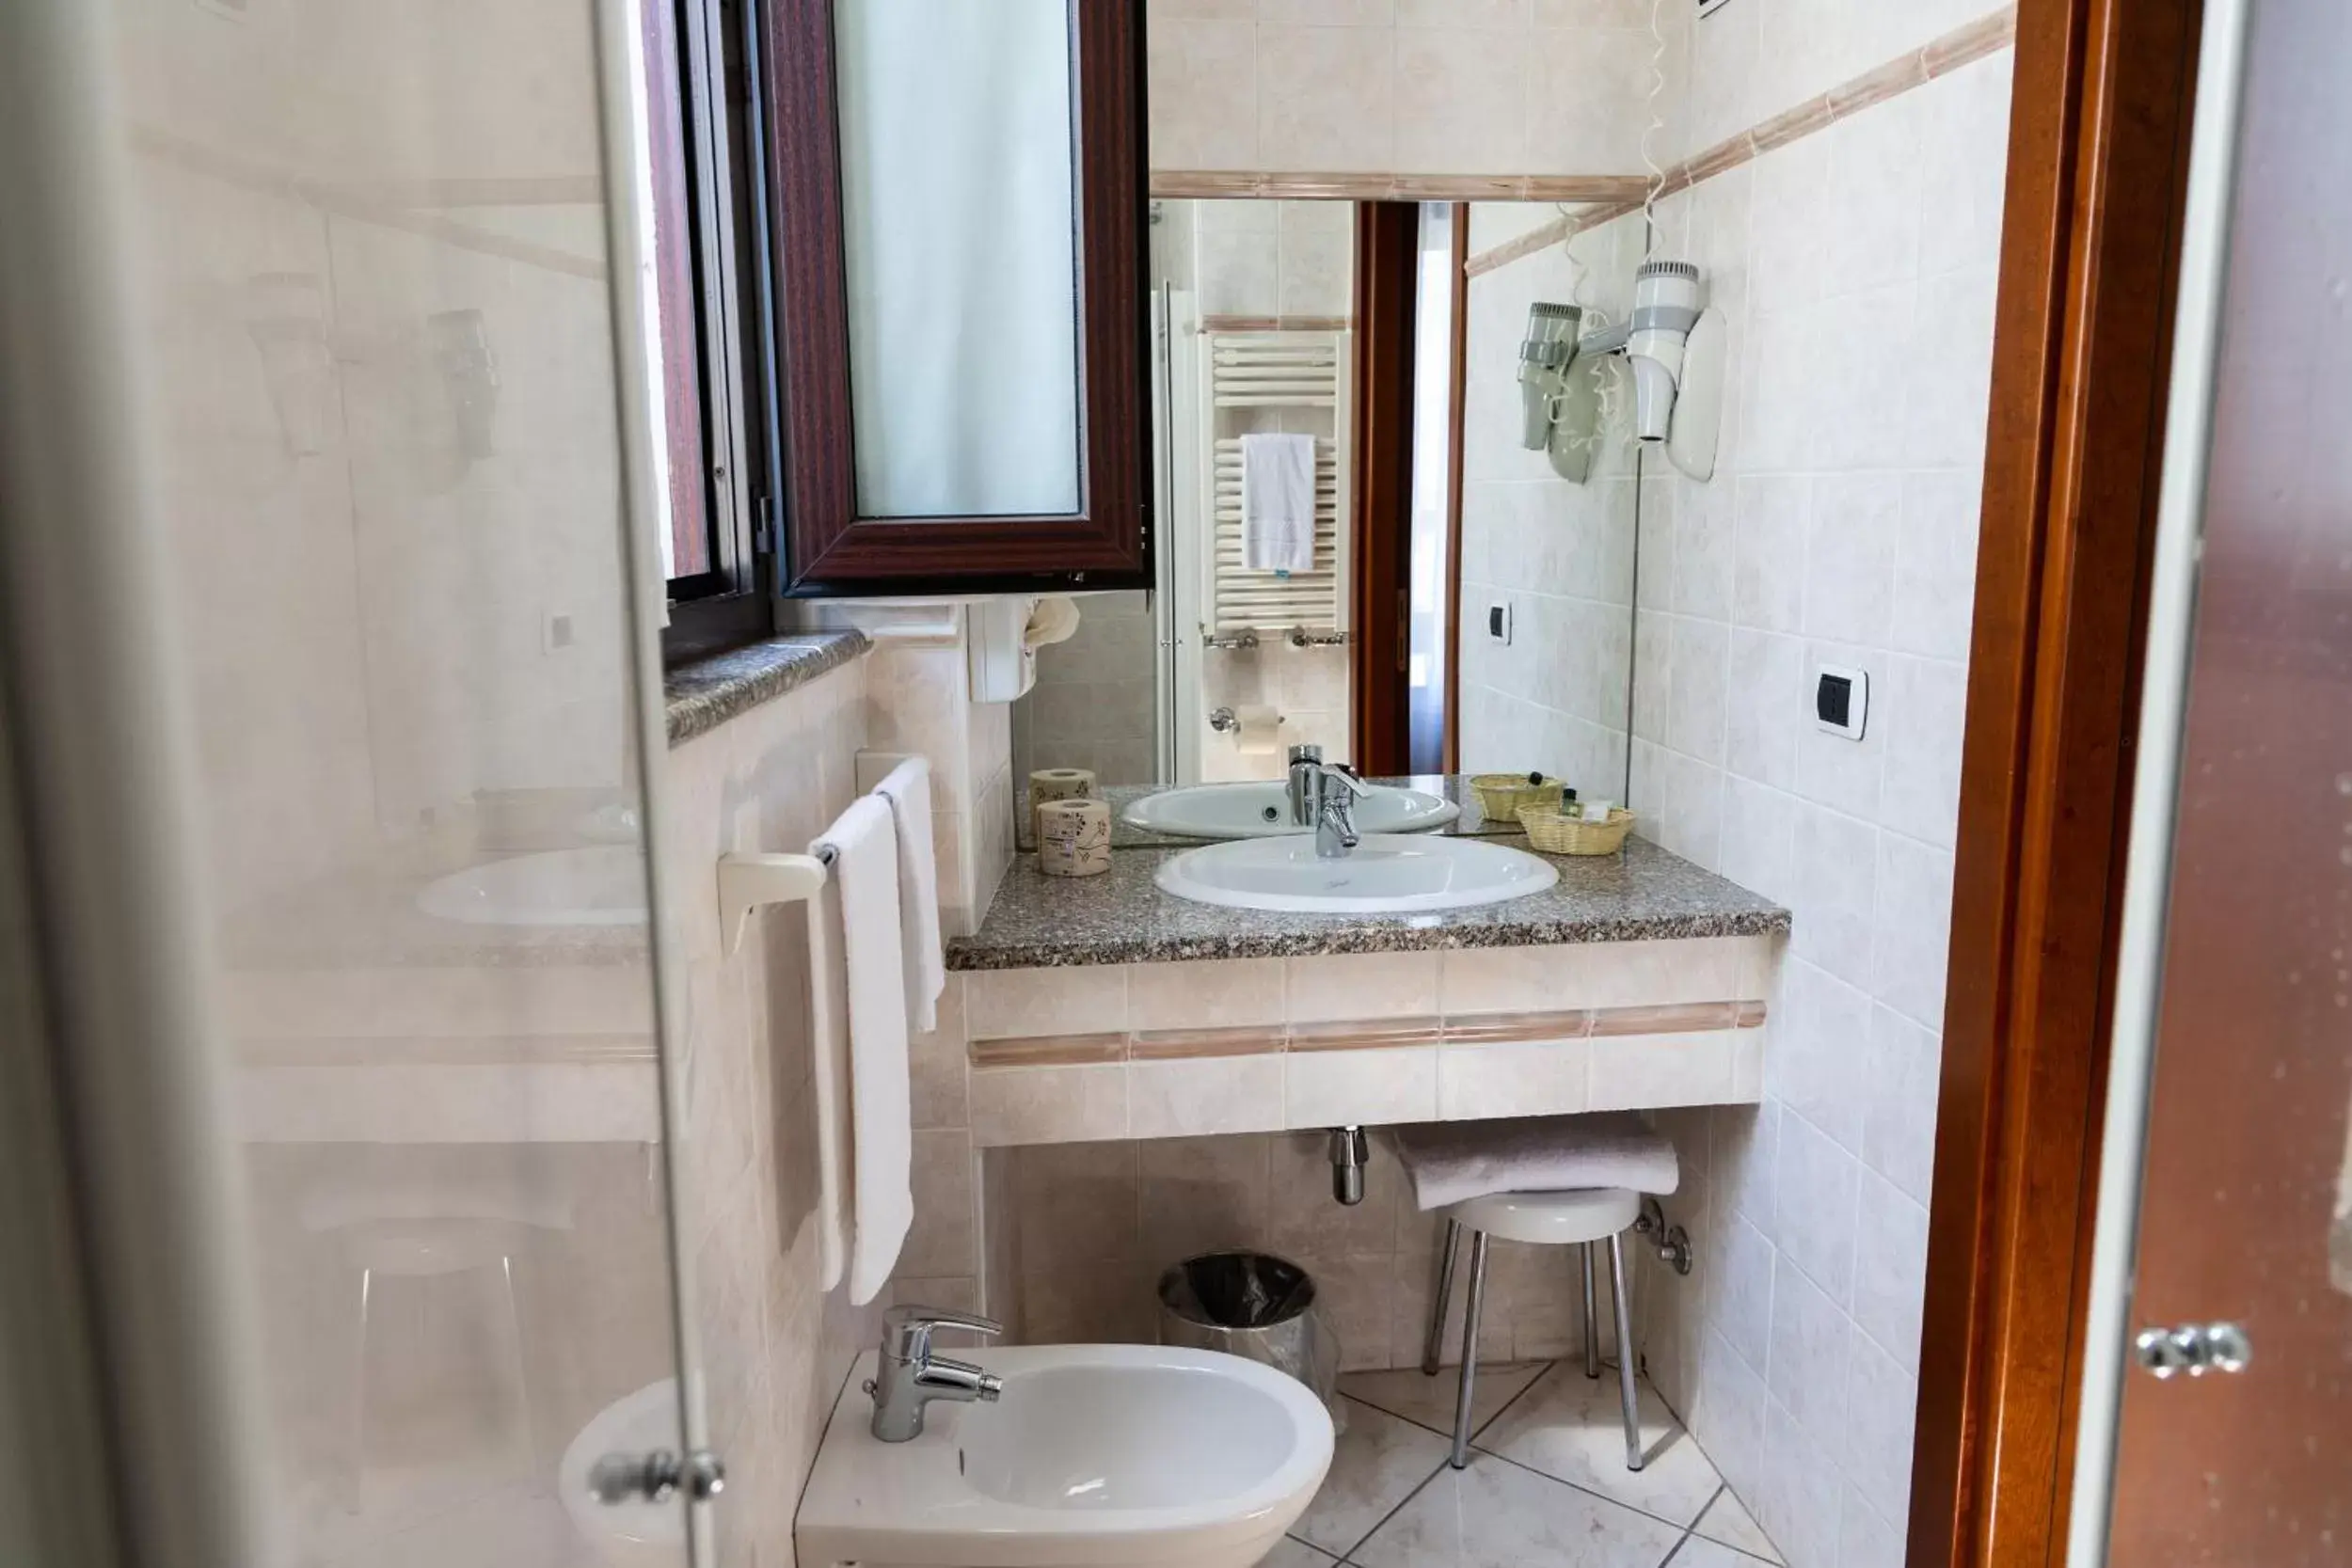 Bathroom in Hotel Ungheria Varese 1946